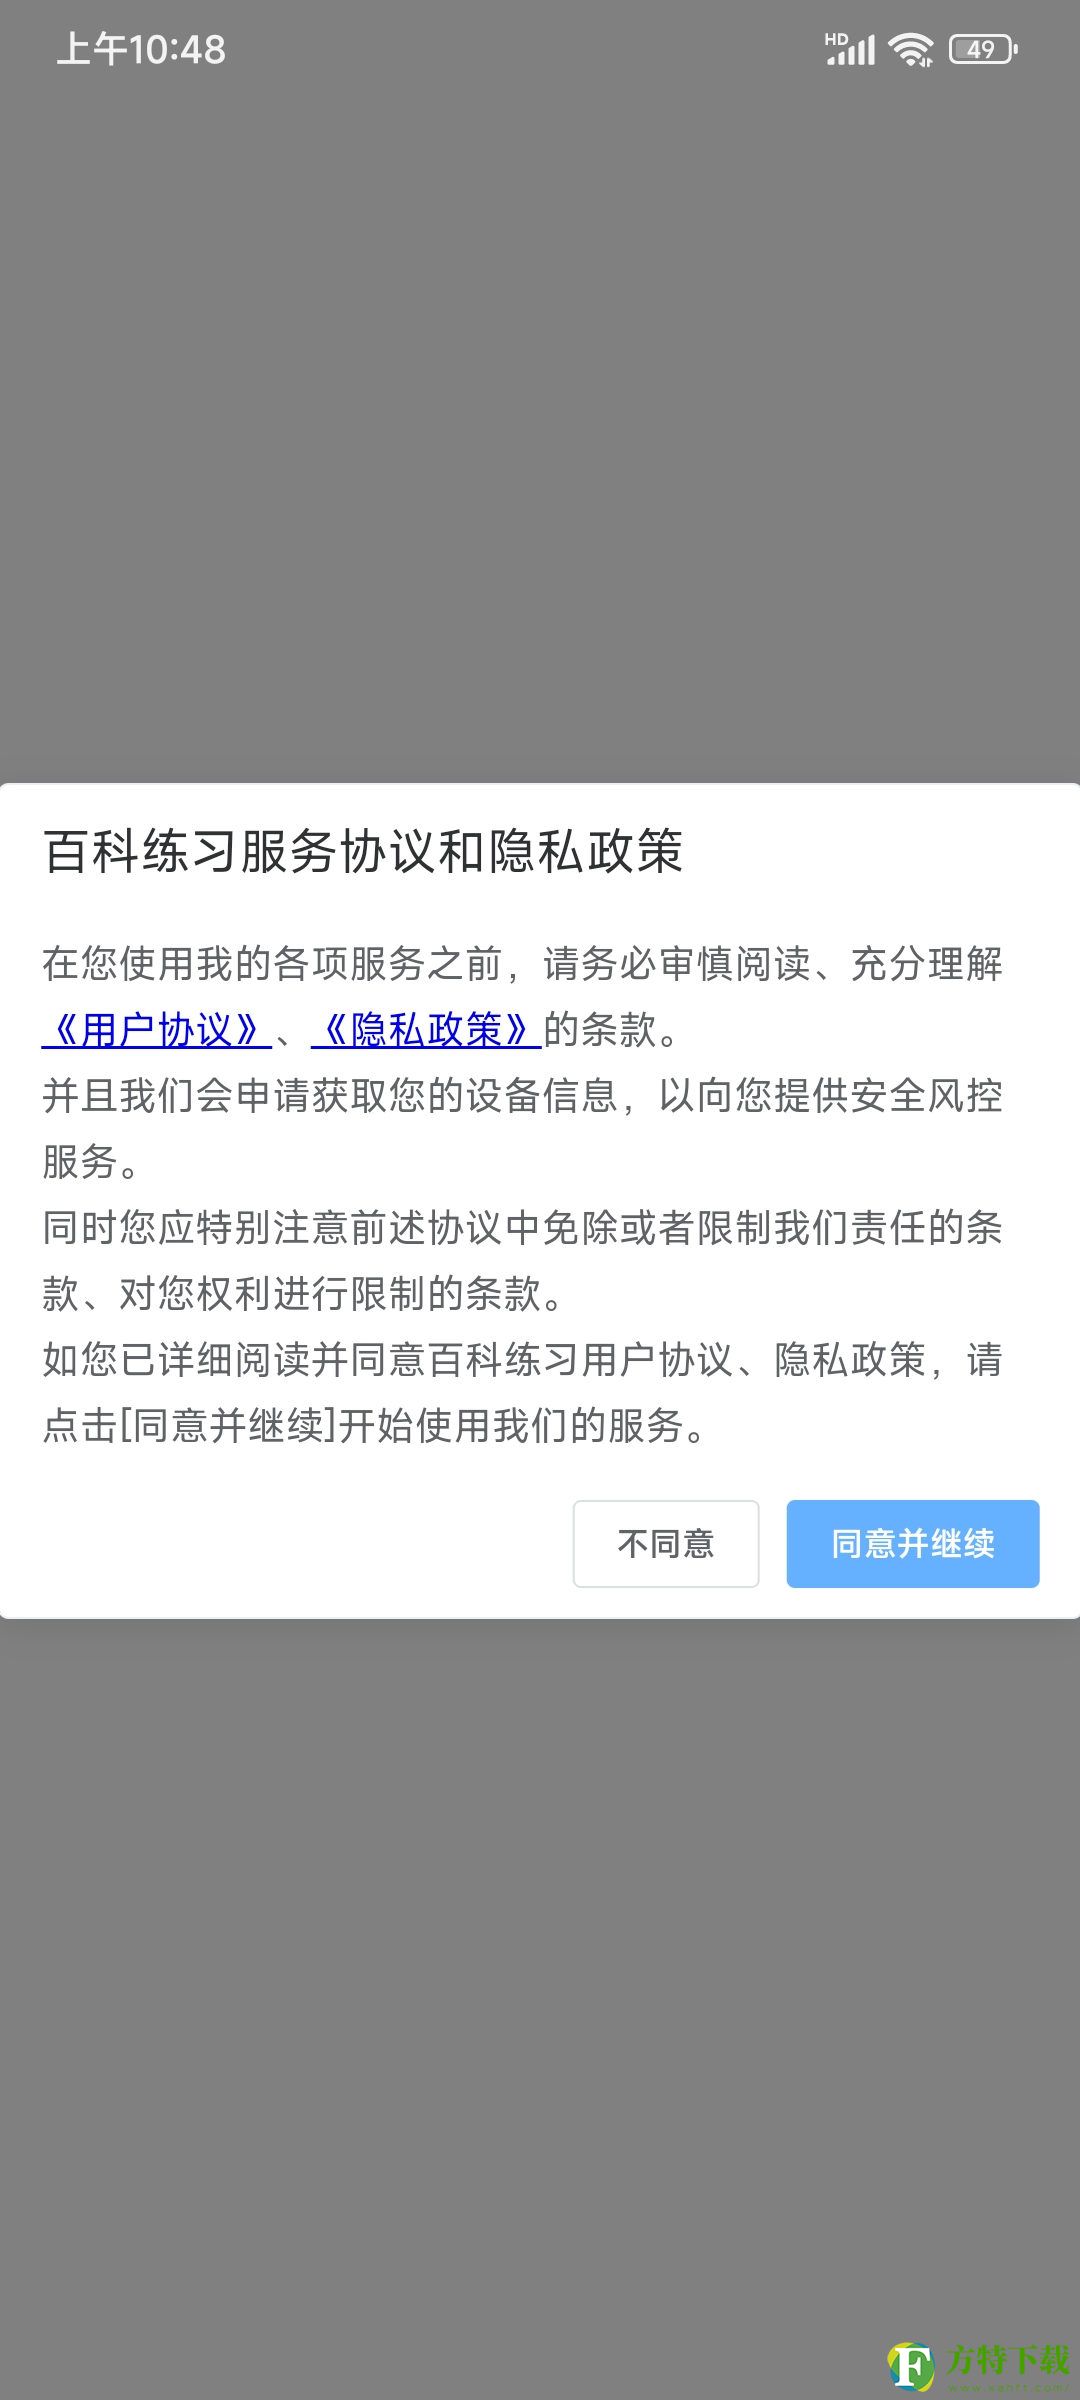 百科练习(知识答题)app下载